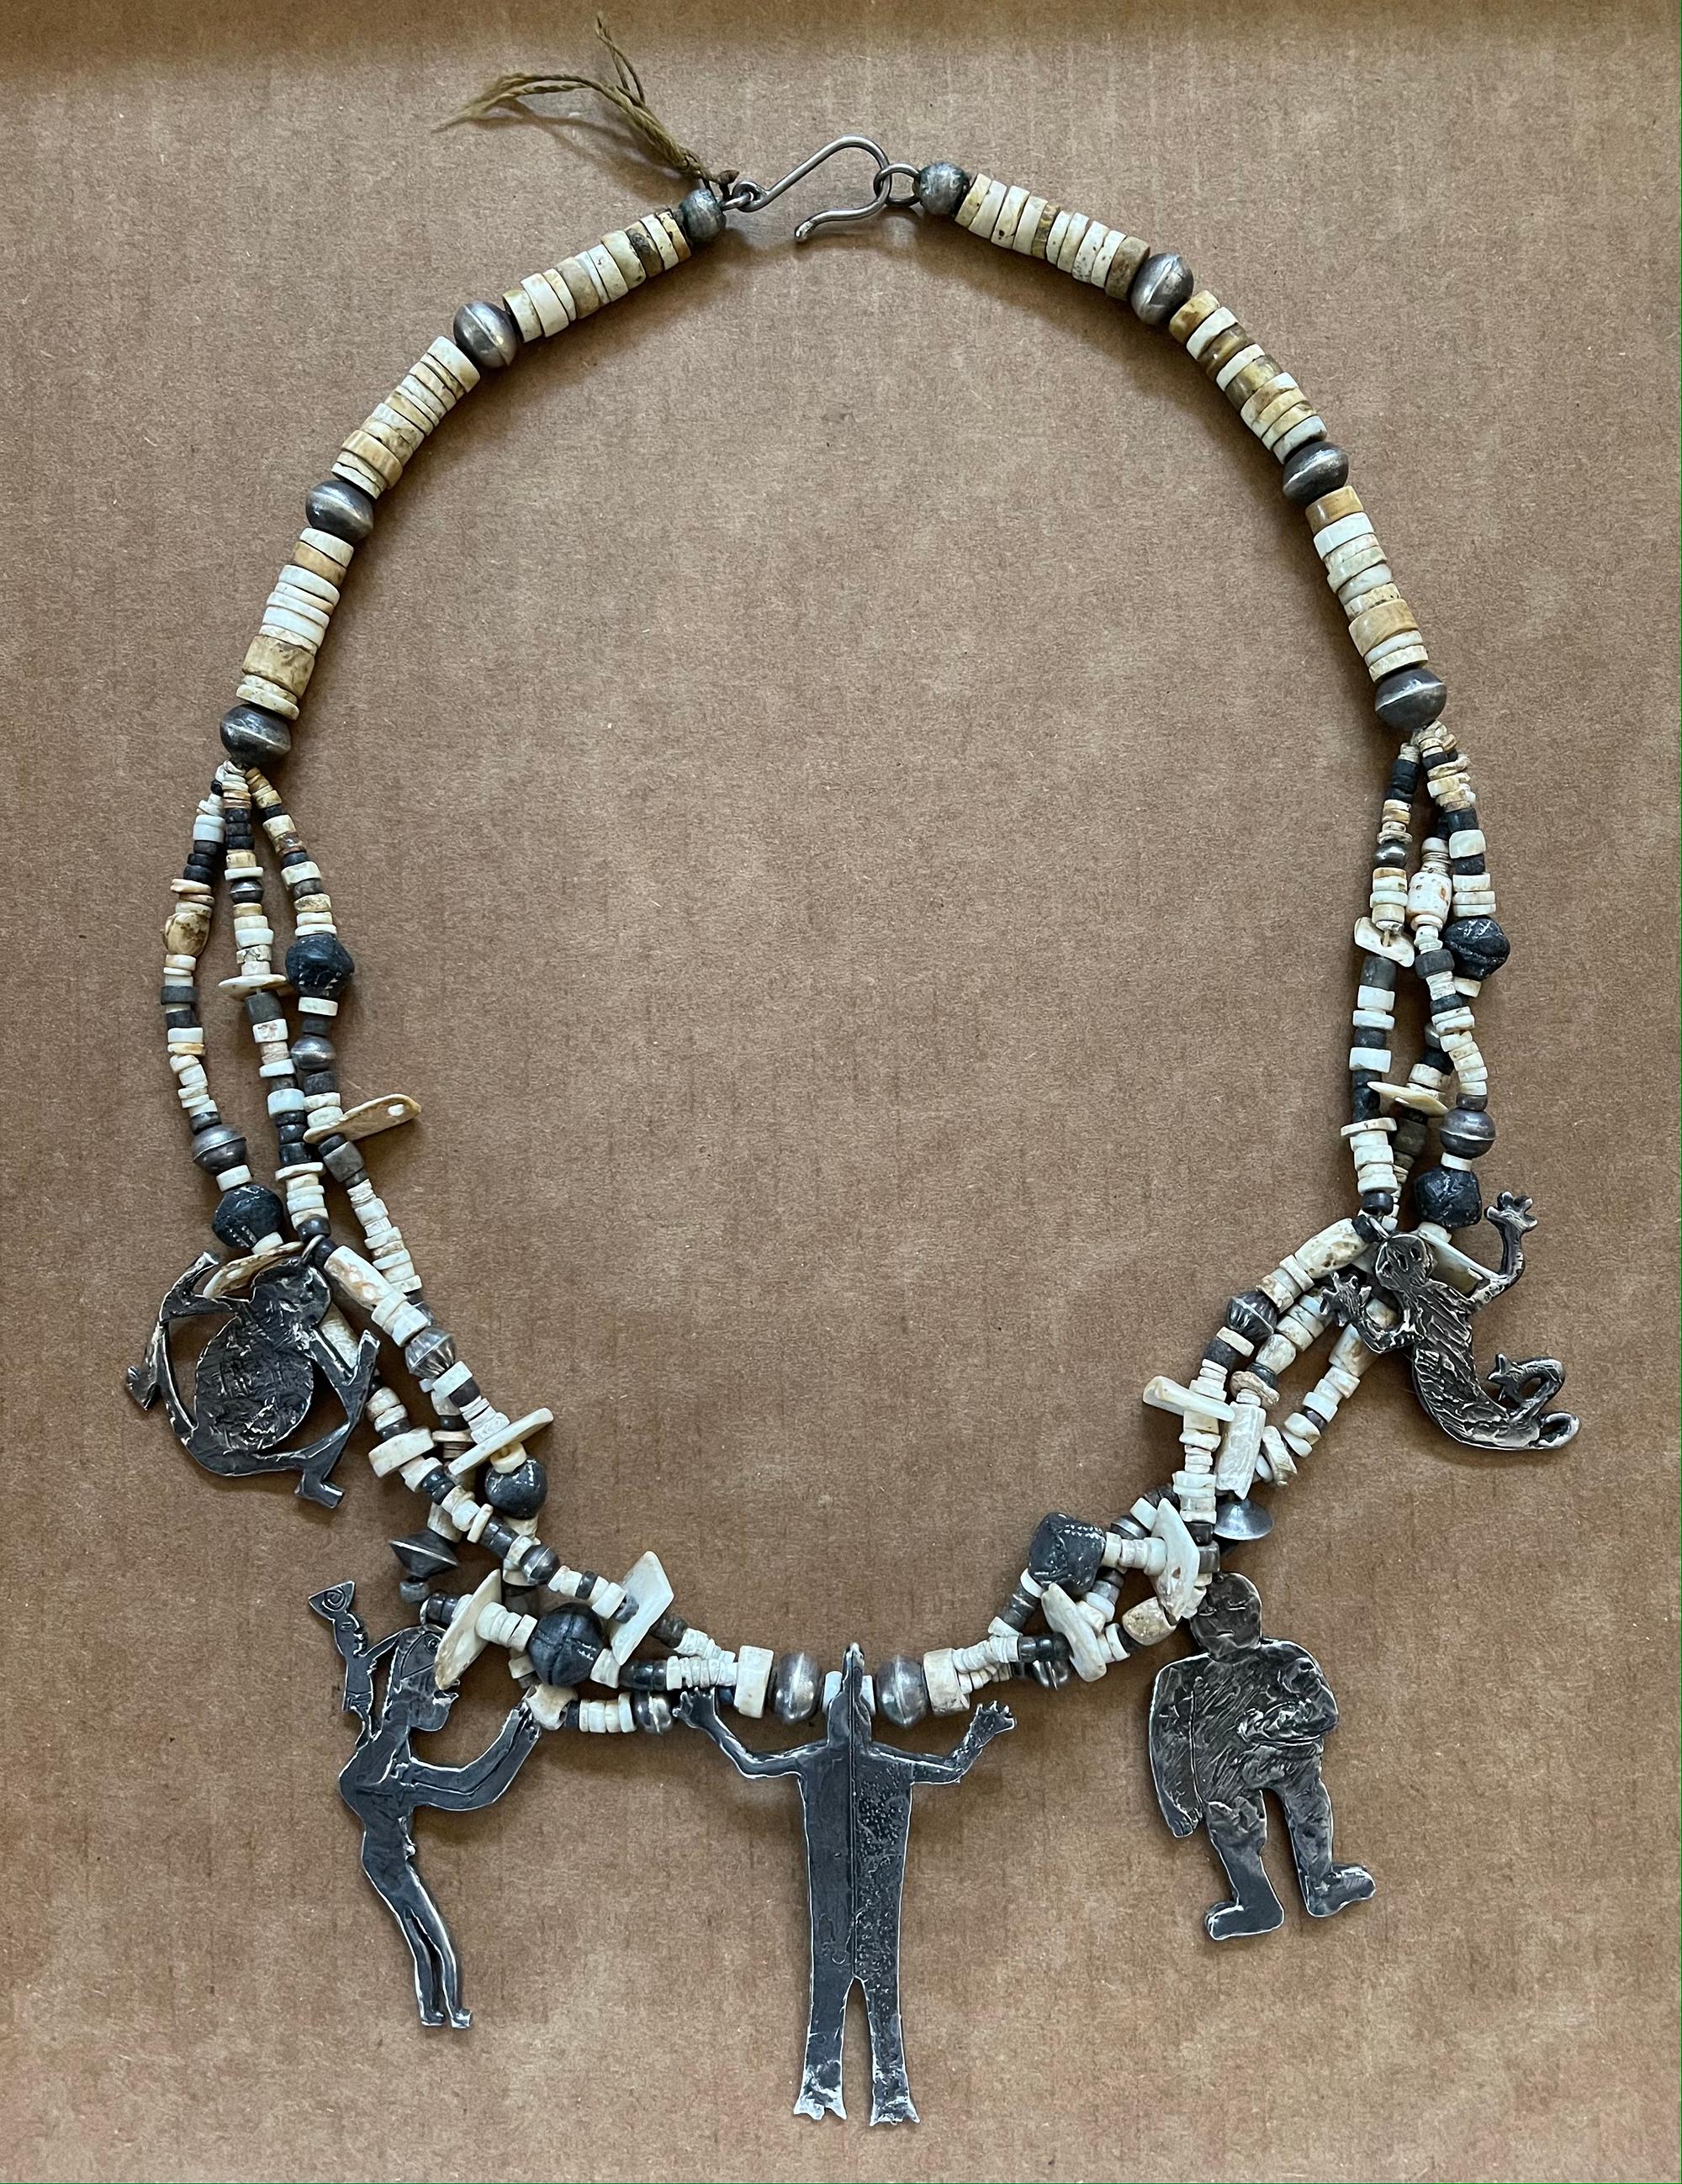 Collier tribal en os, perles, coquillages et argent Annette Bird

Ce collier fantaisiste a été réalisé par Annette R. Bird (1925-2016), une artiste, sculptrice et bijoutière bien connue du sud de la Californie et fondatrice de la Bead Society. Elle